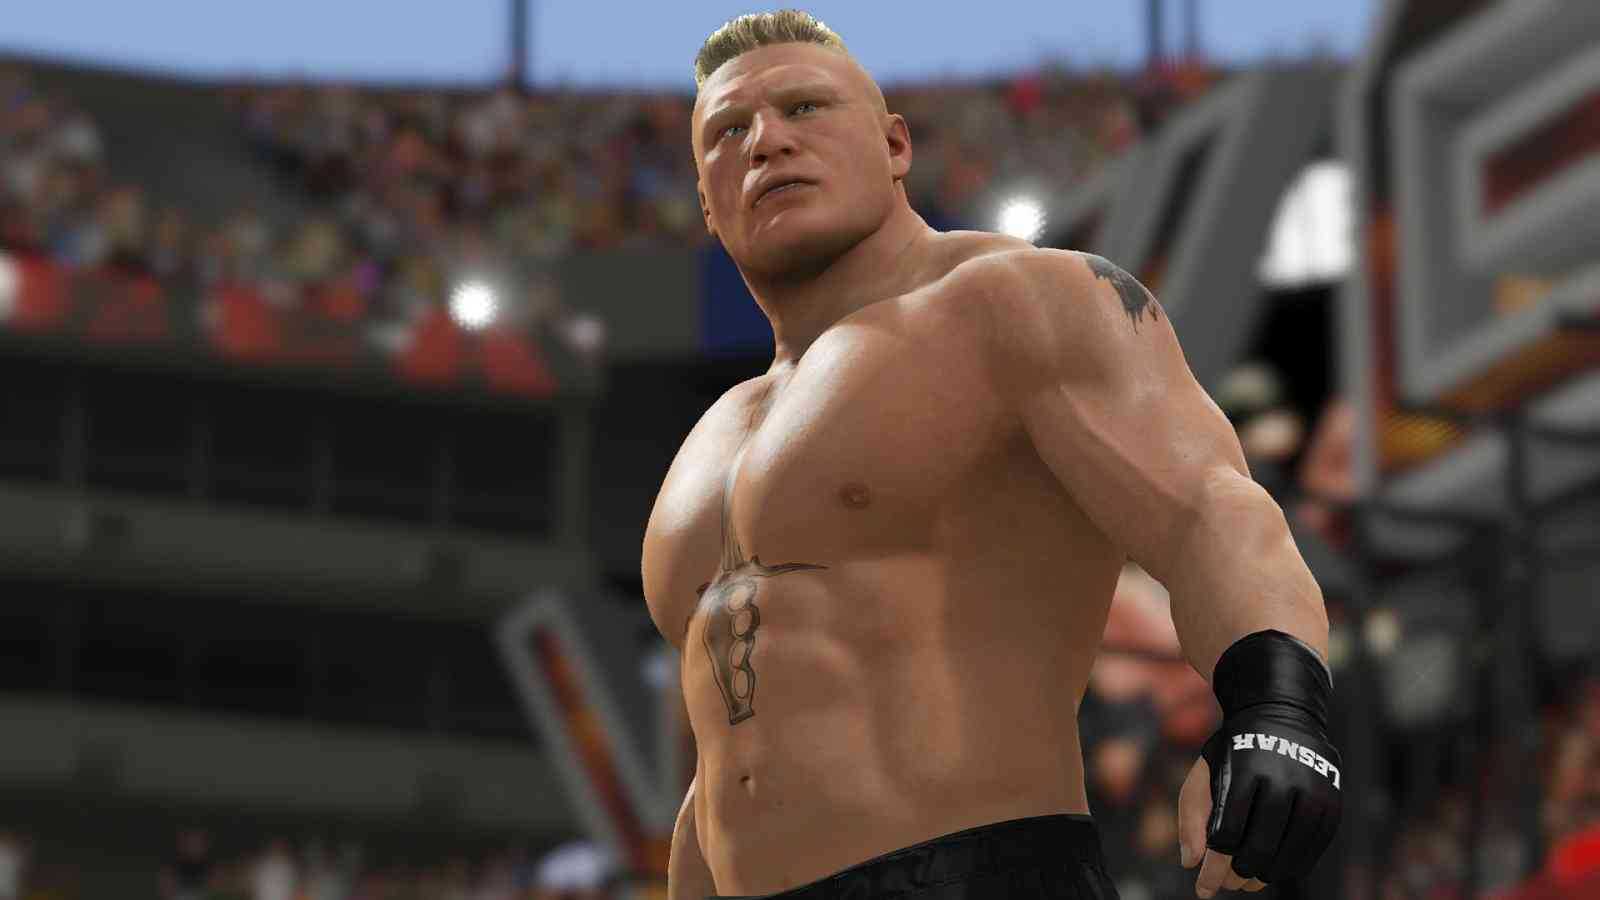 WWE 2K17 konečně míří na PC